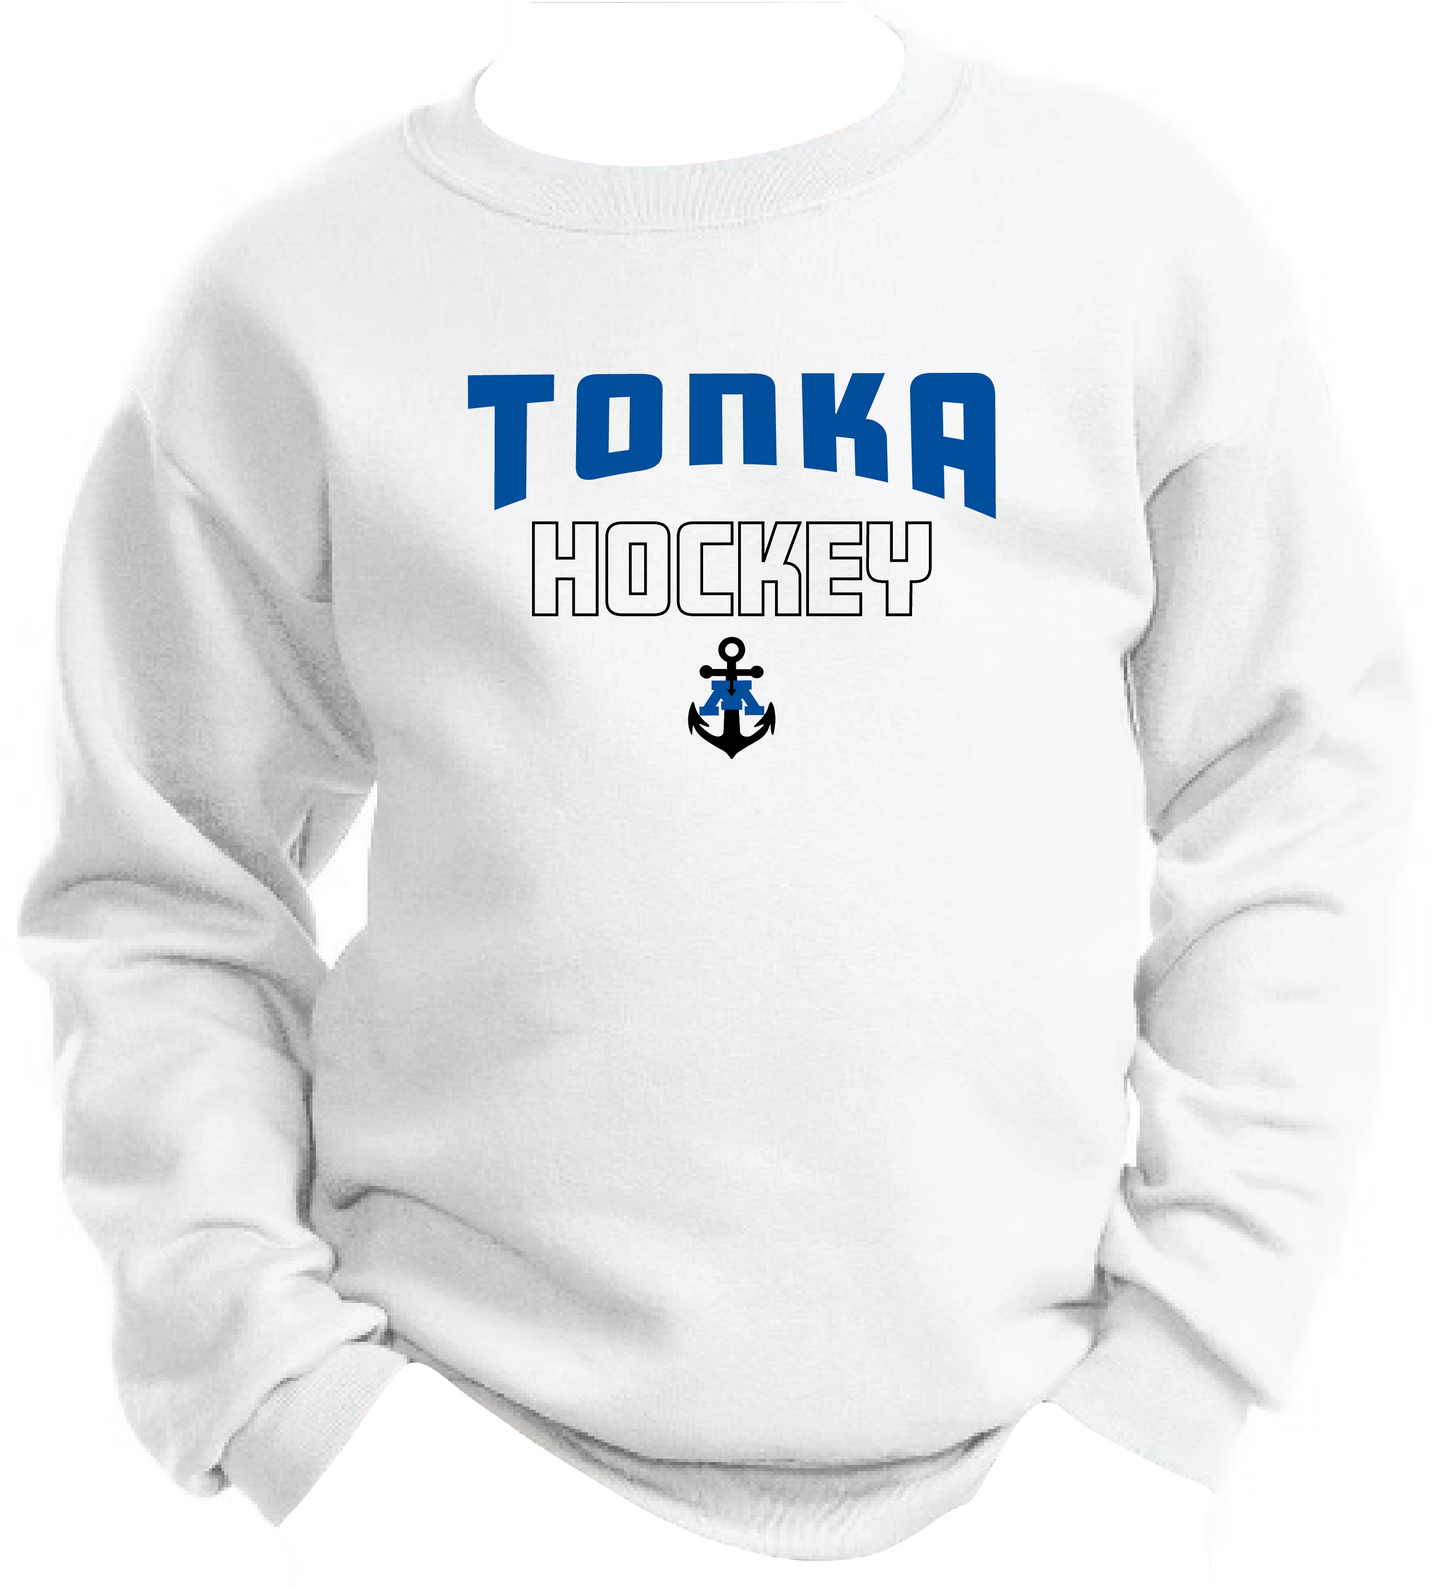 Tonka Hockey Small Anchor White